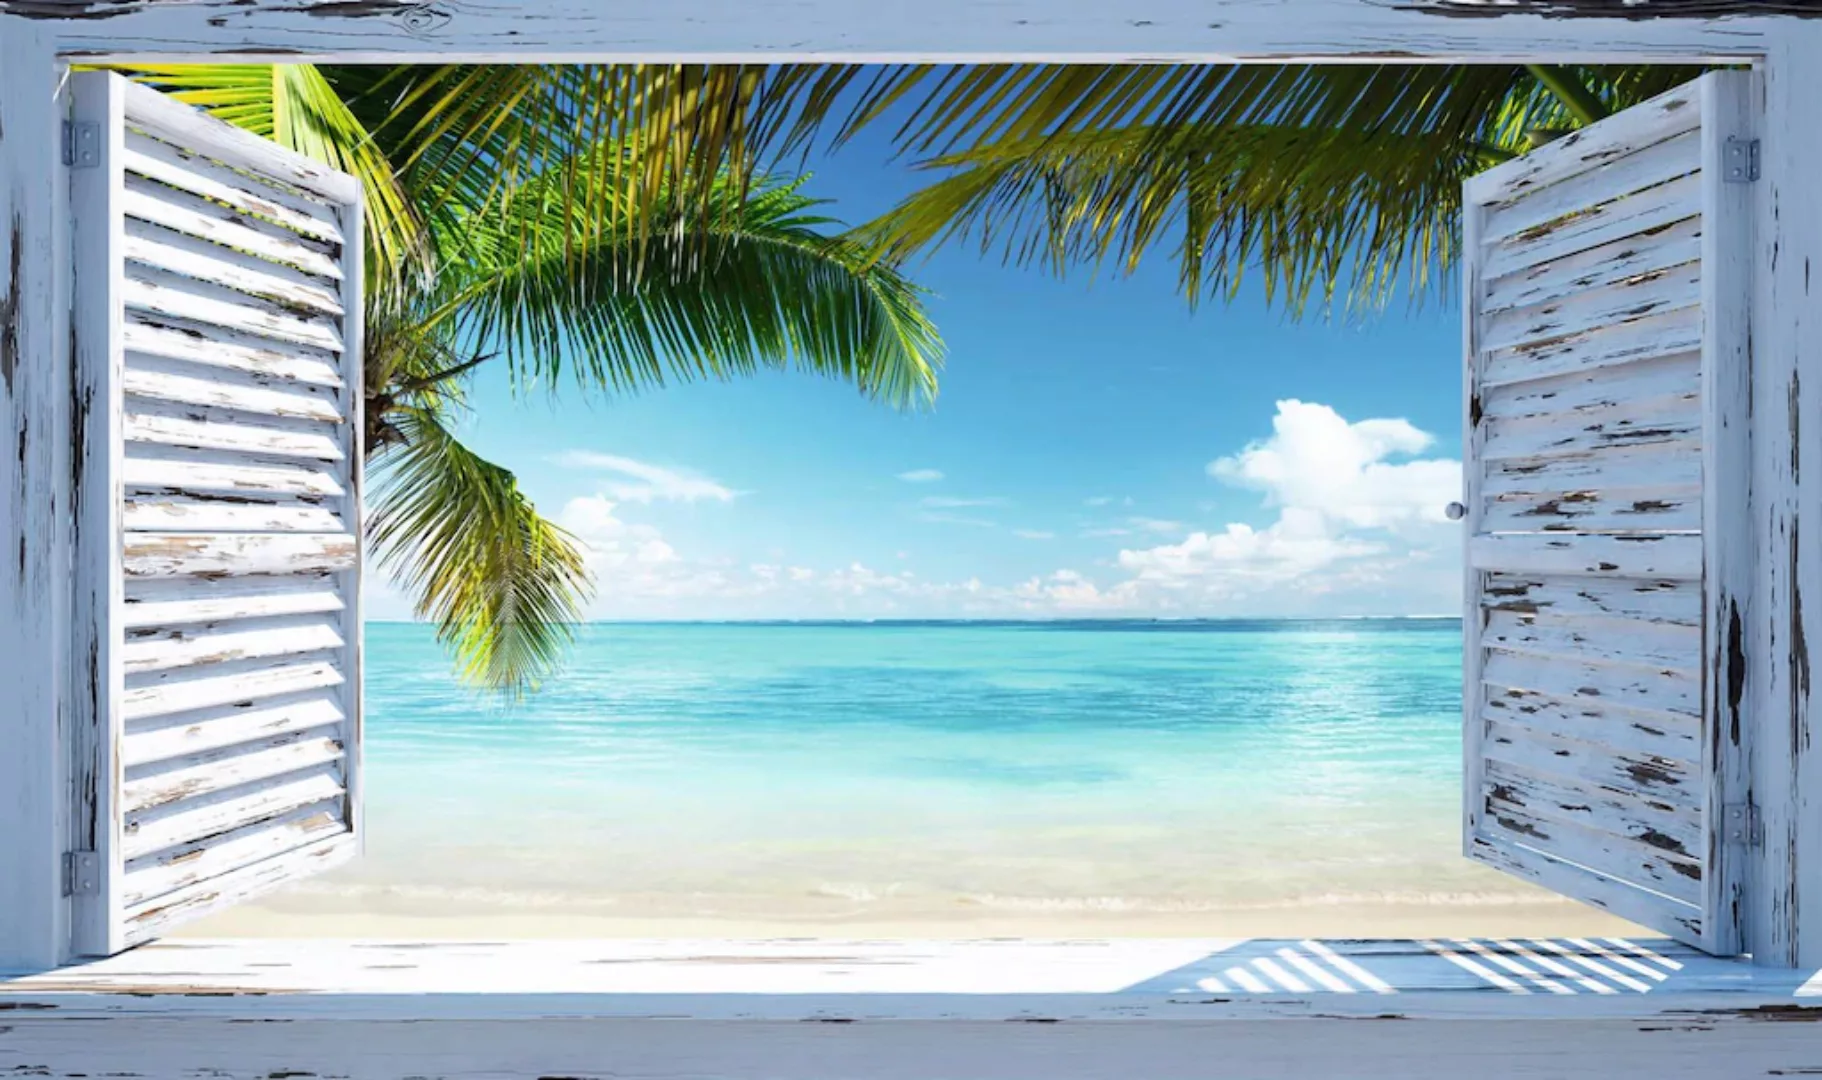 Reinders Wandbild "Strandfenster" günstig online kaufen